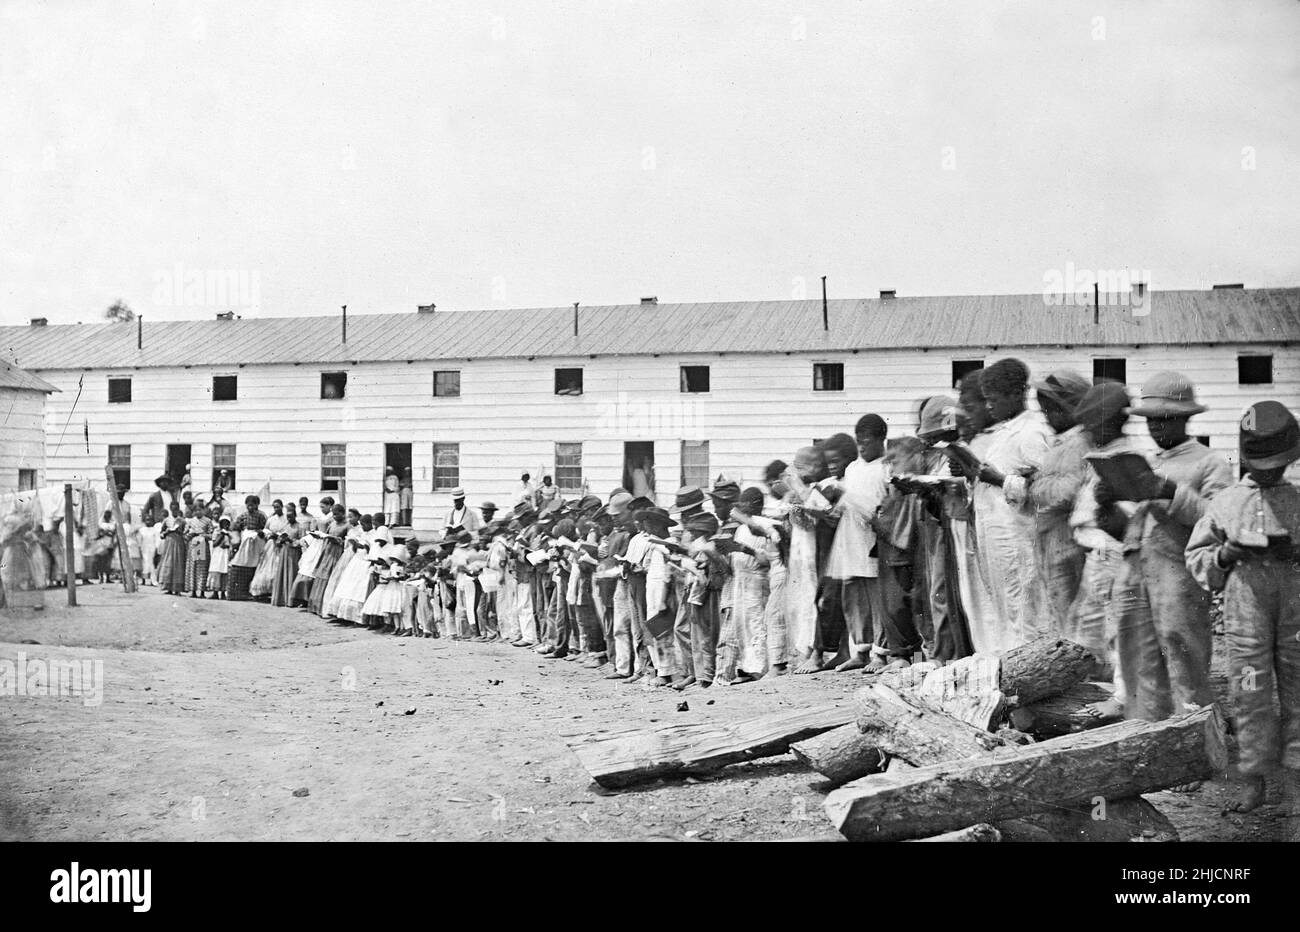 Contraband School, amerikanische Bürgerkriegszeit, um 1861-65. Foto von Mathew Brady. Schmuggelware war ein Begriff, der im US-Militär während des Bürgerkrieges allgemein verwendet wurde, um einen neuen Status für bestimmte entflohene Sklaven oder diejenigen zu beschreiben, die sich mit den Unionskräften verbündet haben. Stockfoto